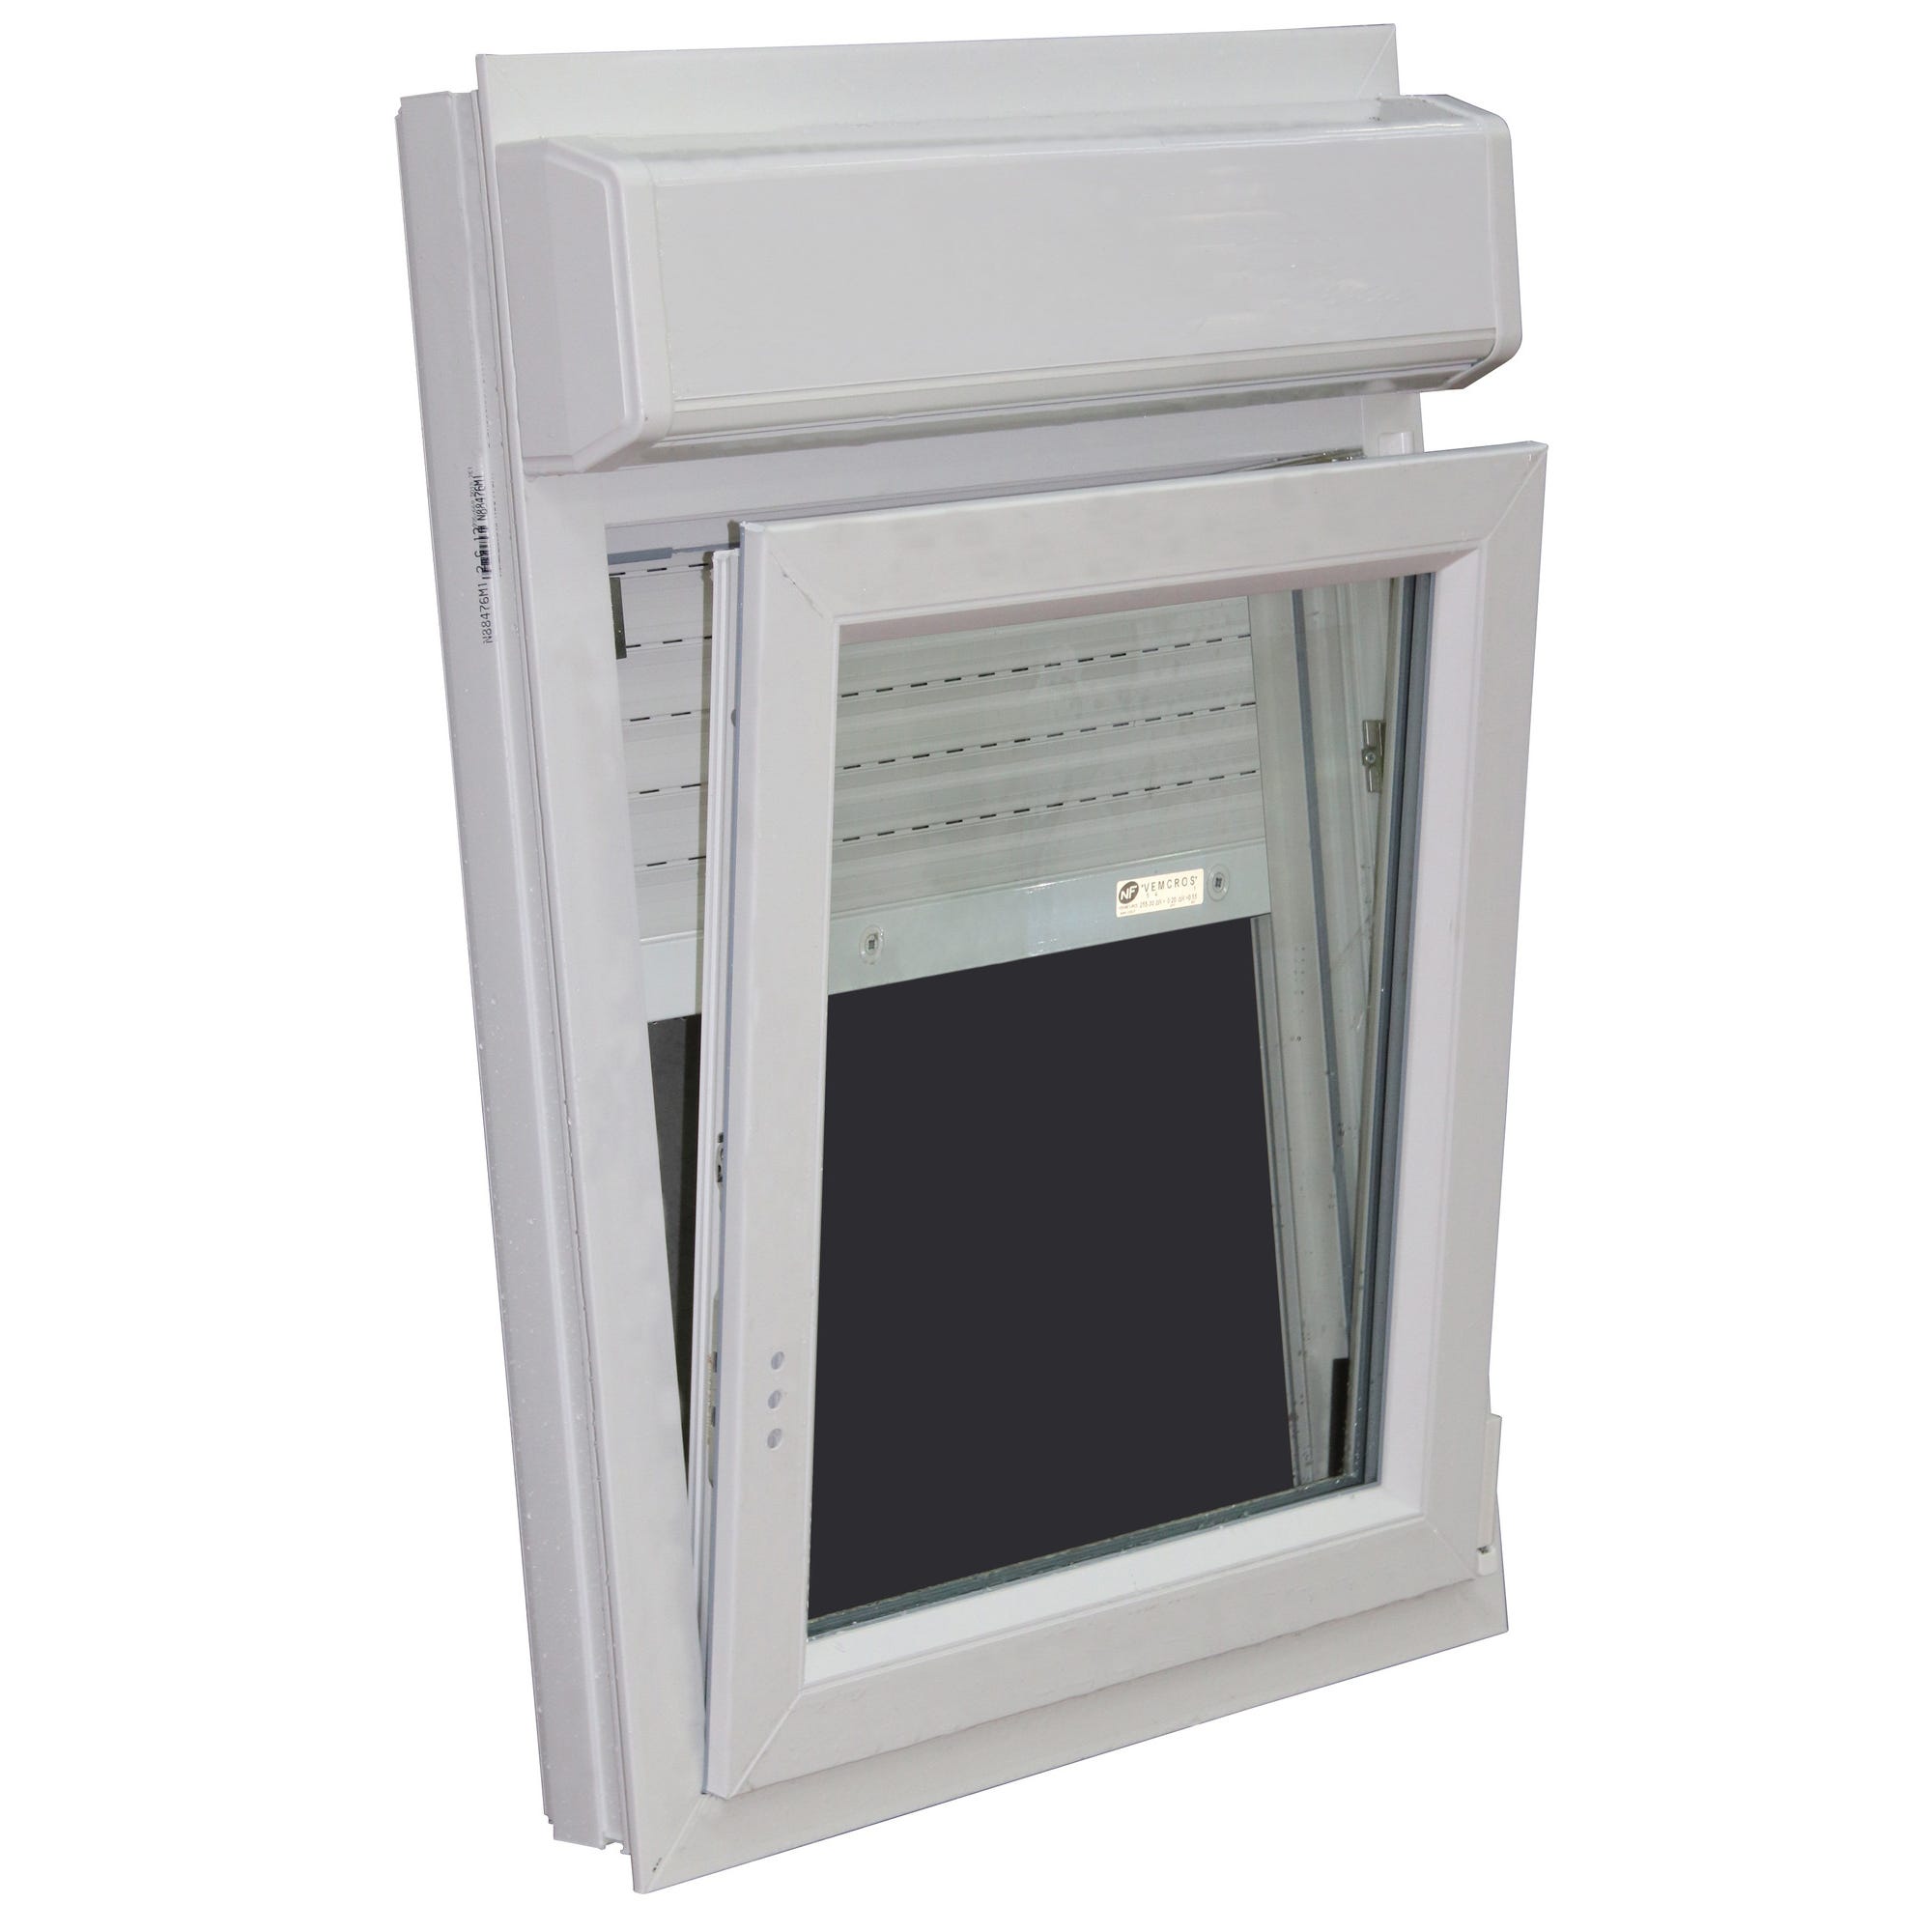 Fenêtre PVC H.75 x l.60 cm oscillo-battant 1 vantail tirant droit avec volet roulant intégré blanc 0